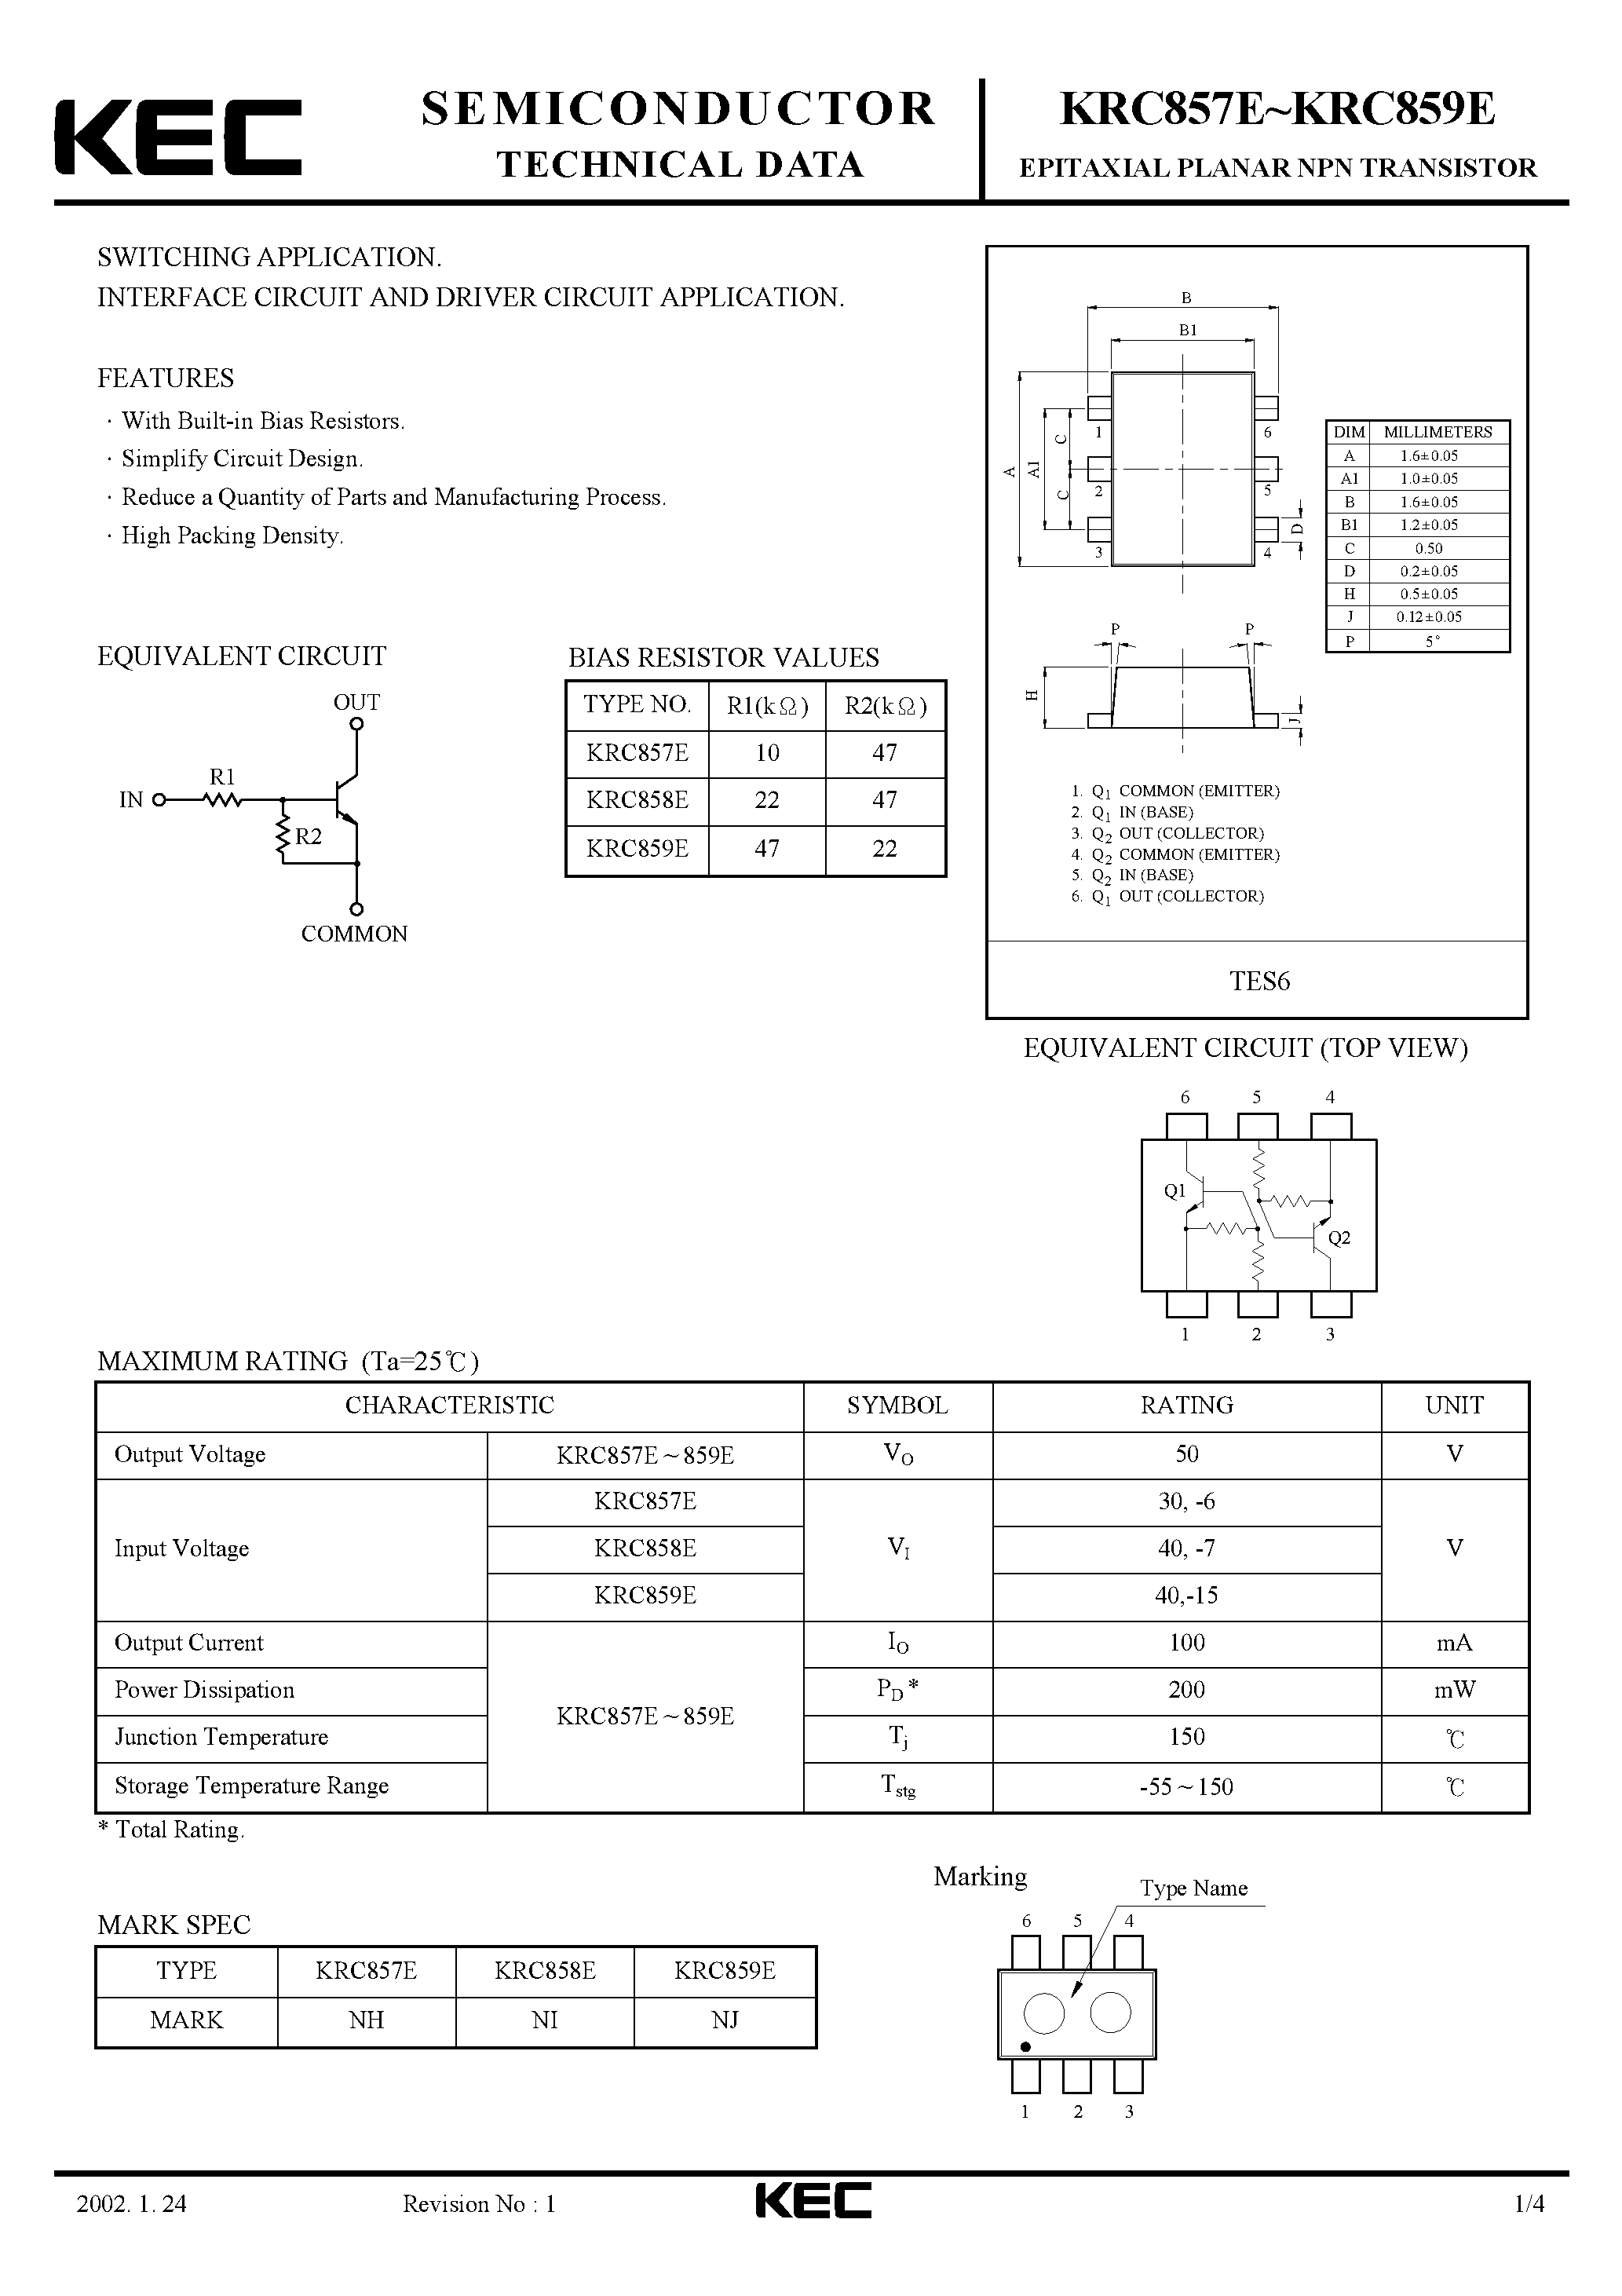 Datasheet KRC857E - (KRC857E - KRC859E) EPITAXIAL PLANAR NPN TRANSISTOR page 1